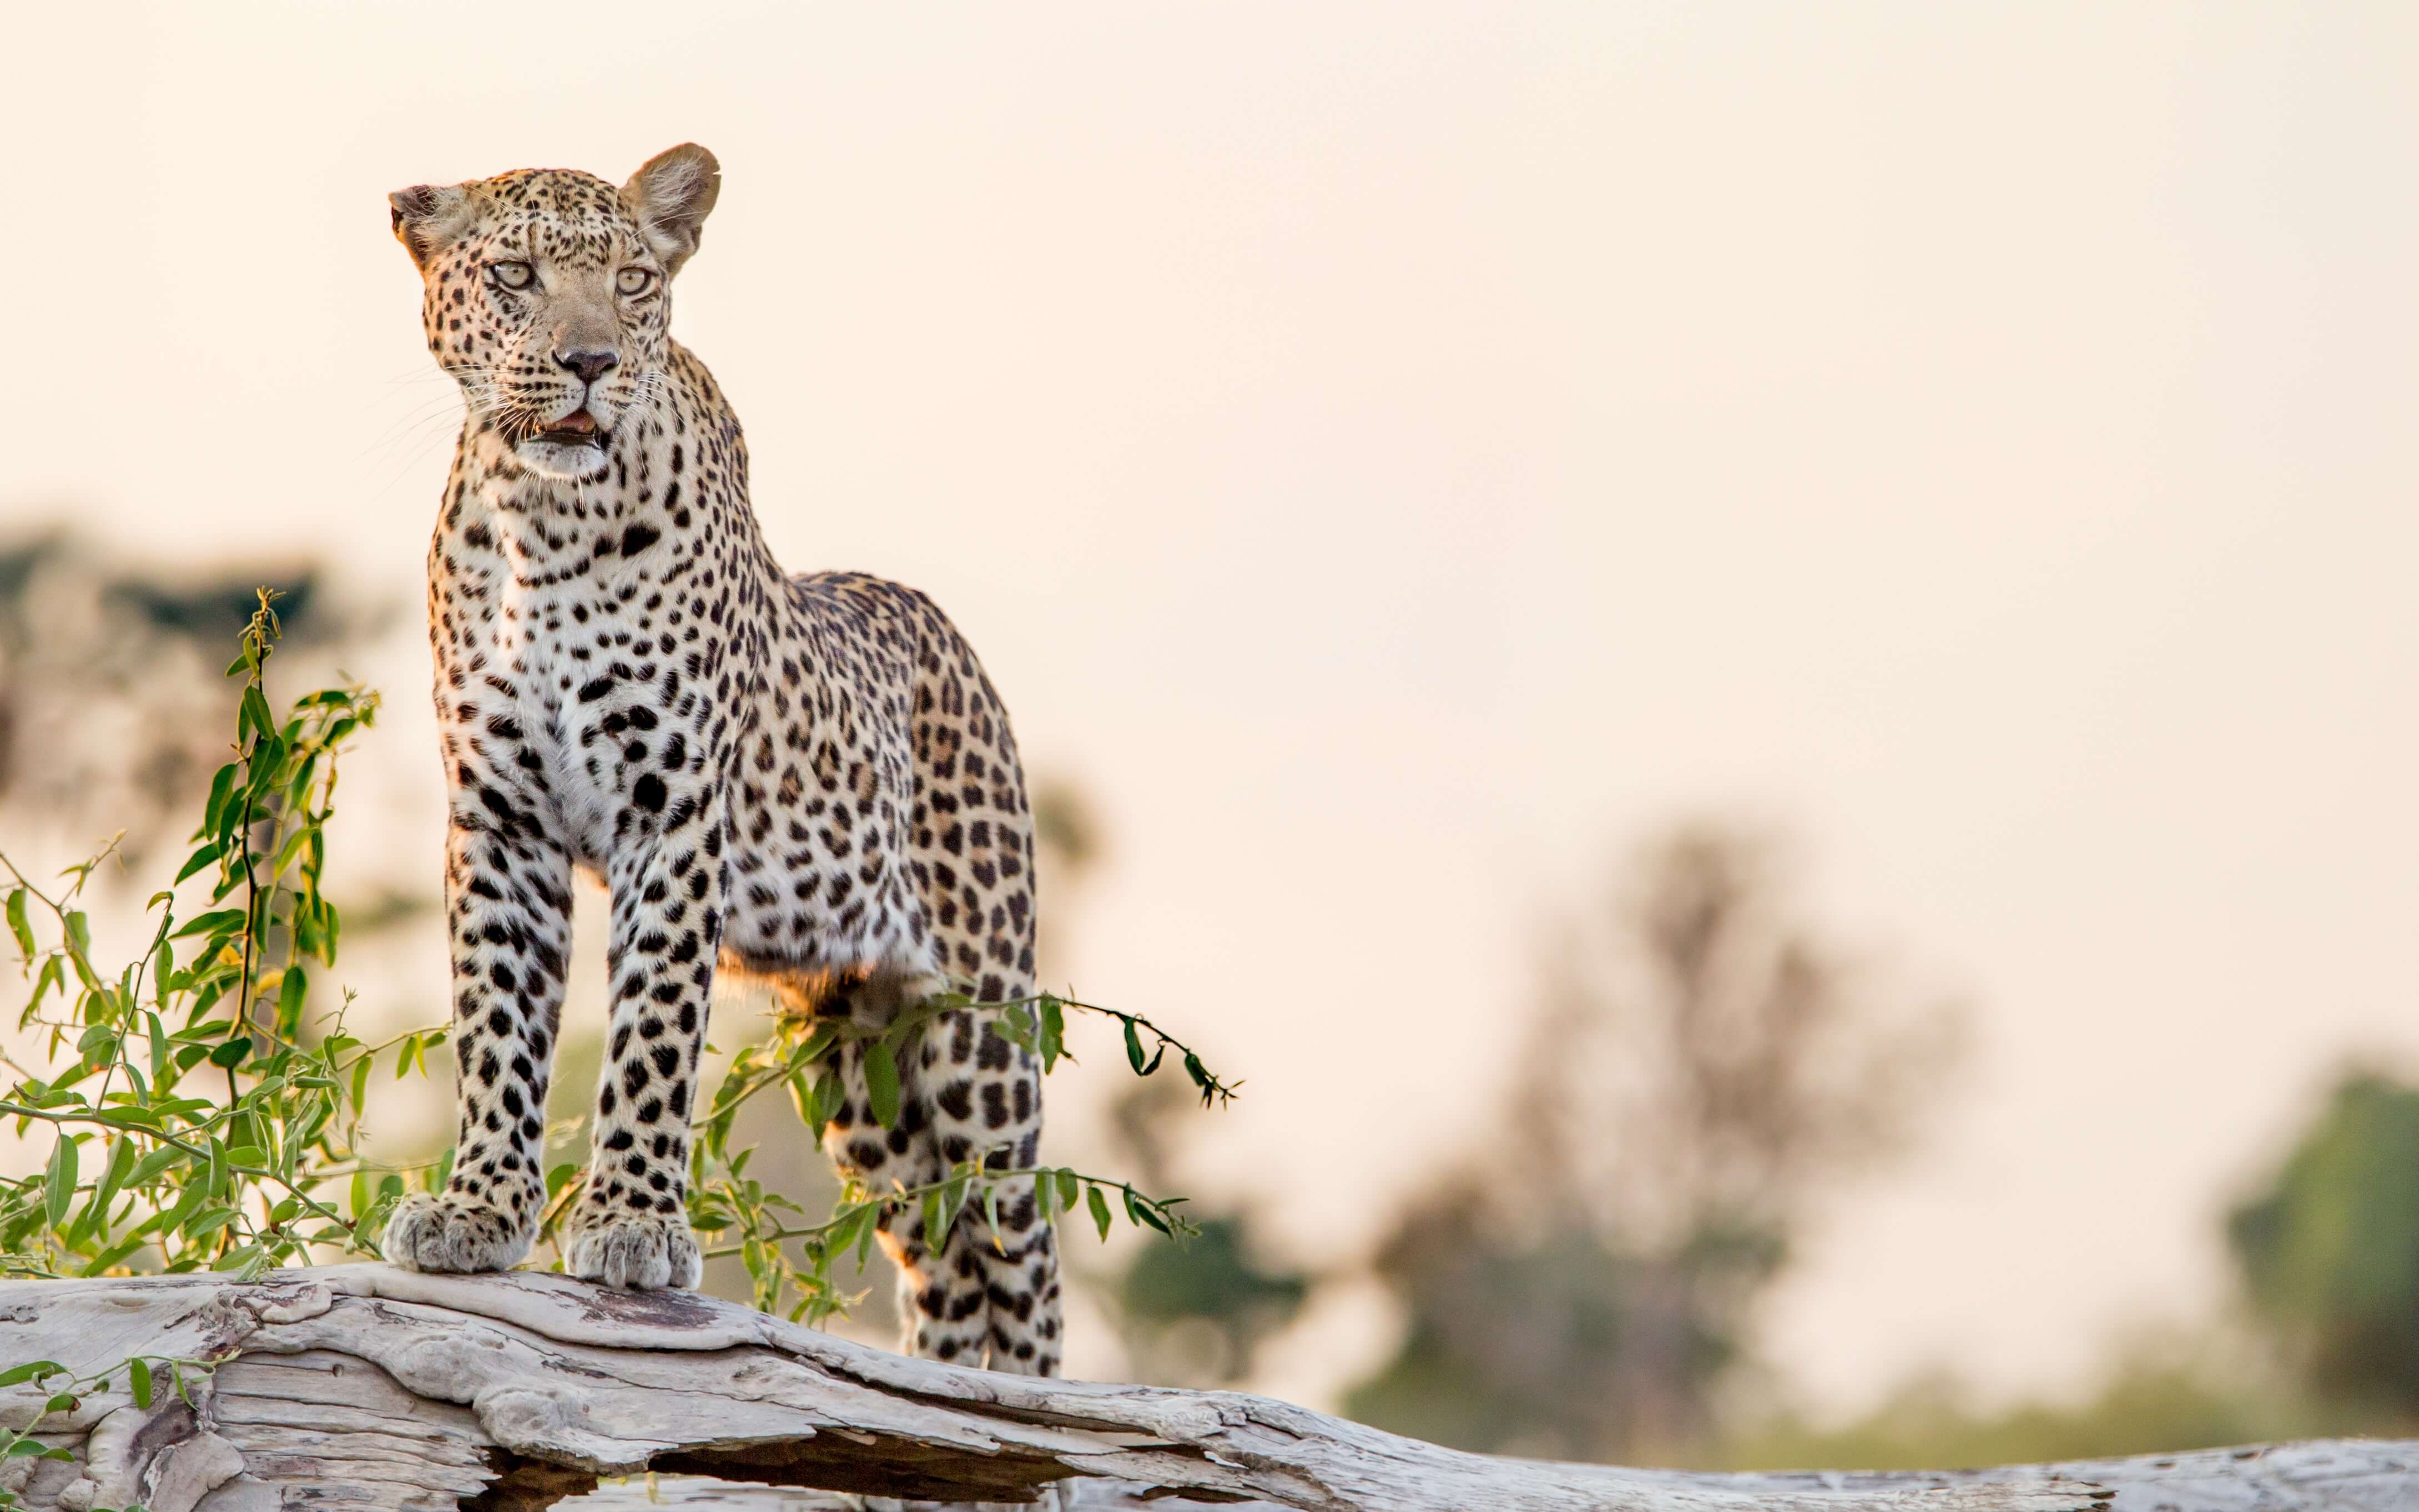 In the company of big cats in Botswana's Okavango Delta